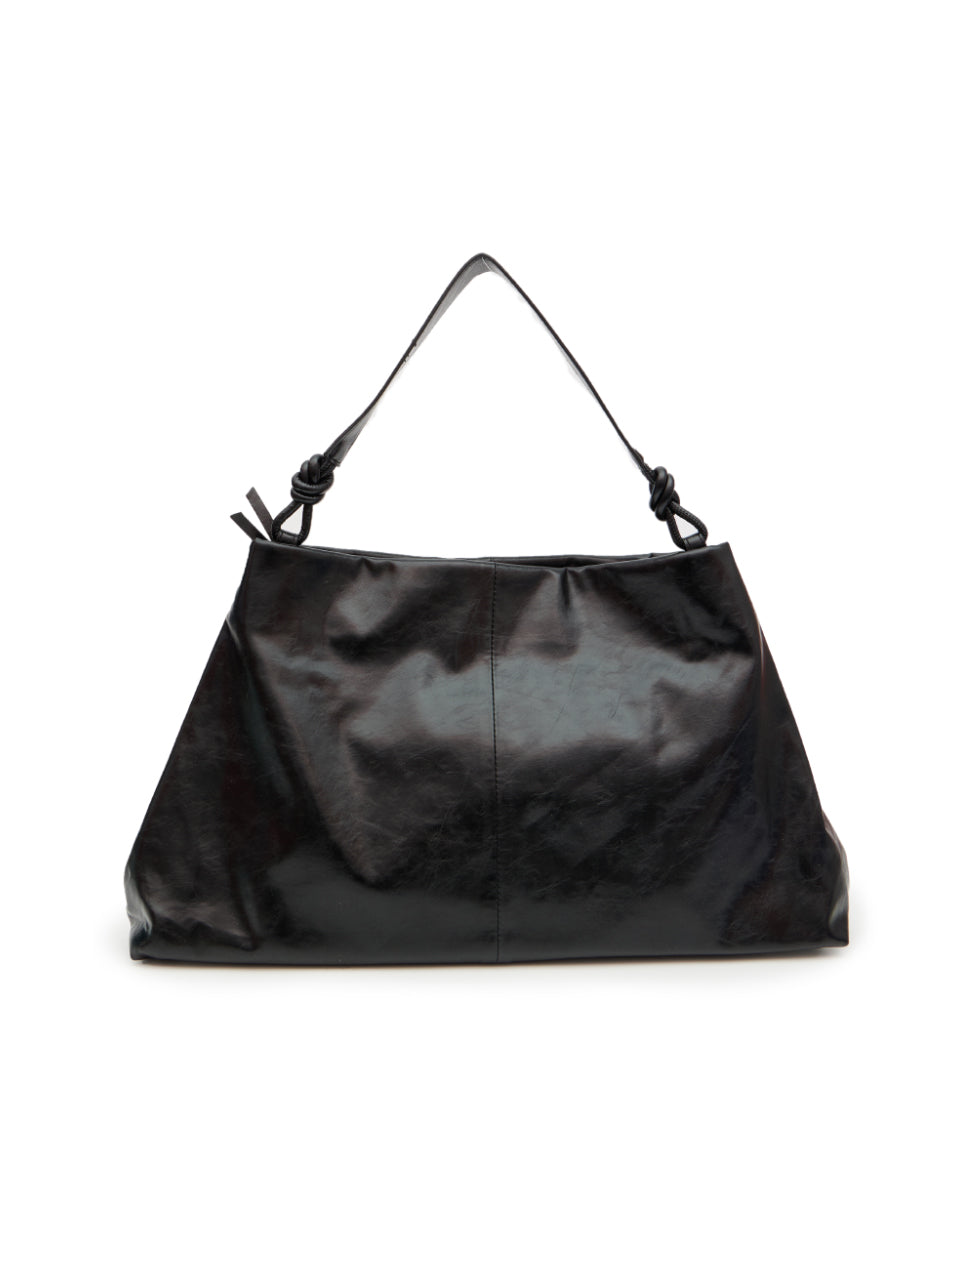 A-1586 Leather Shoulder Bag